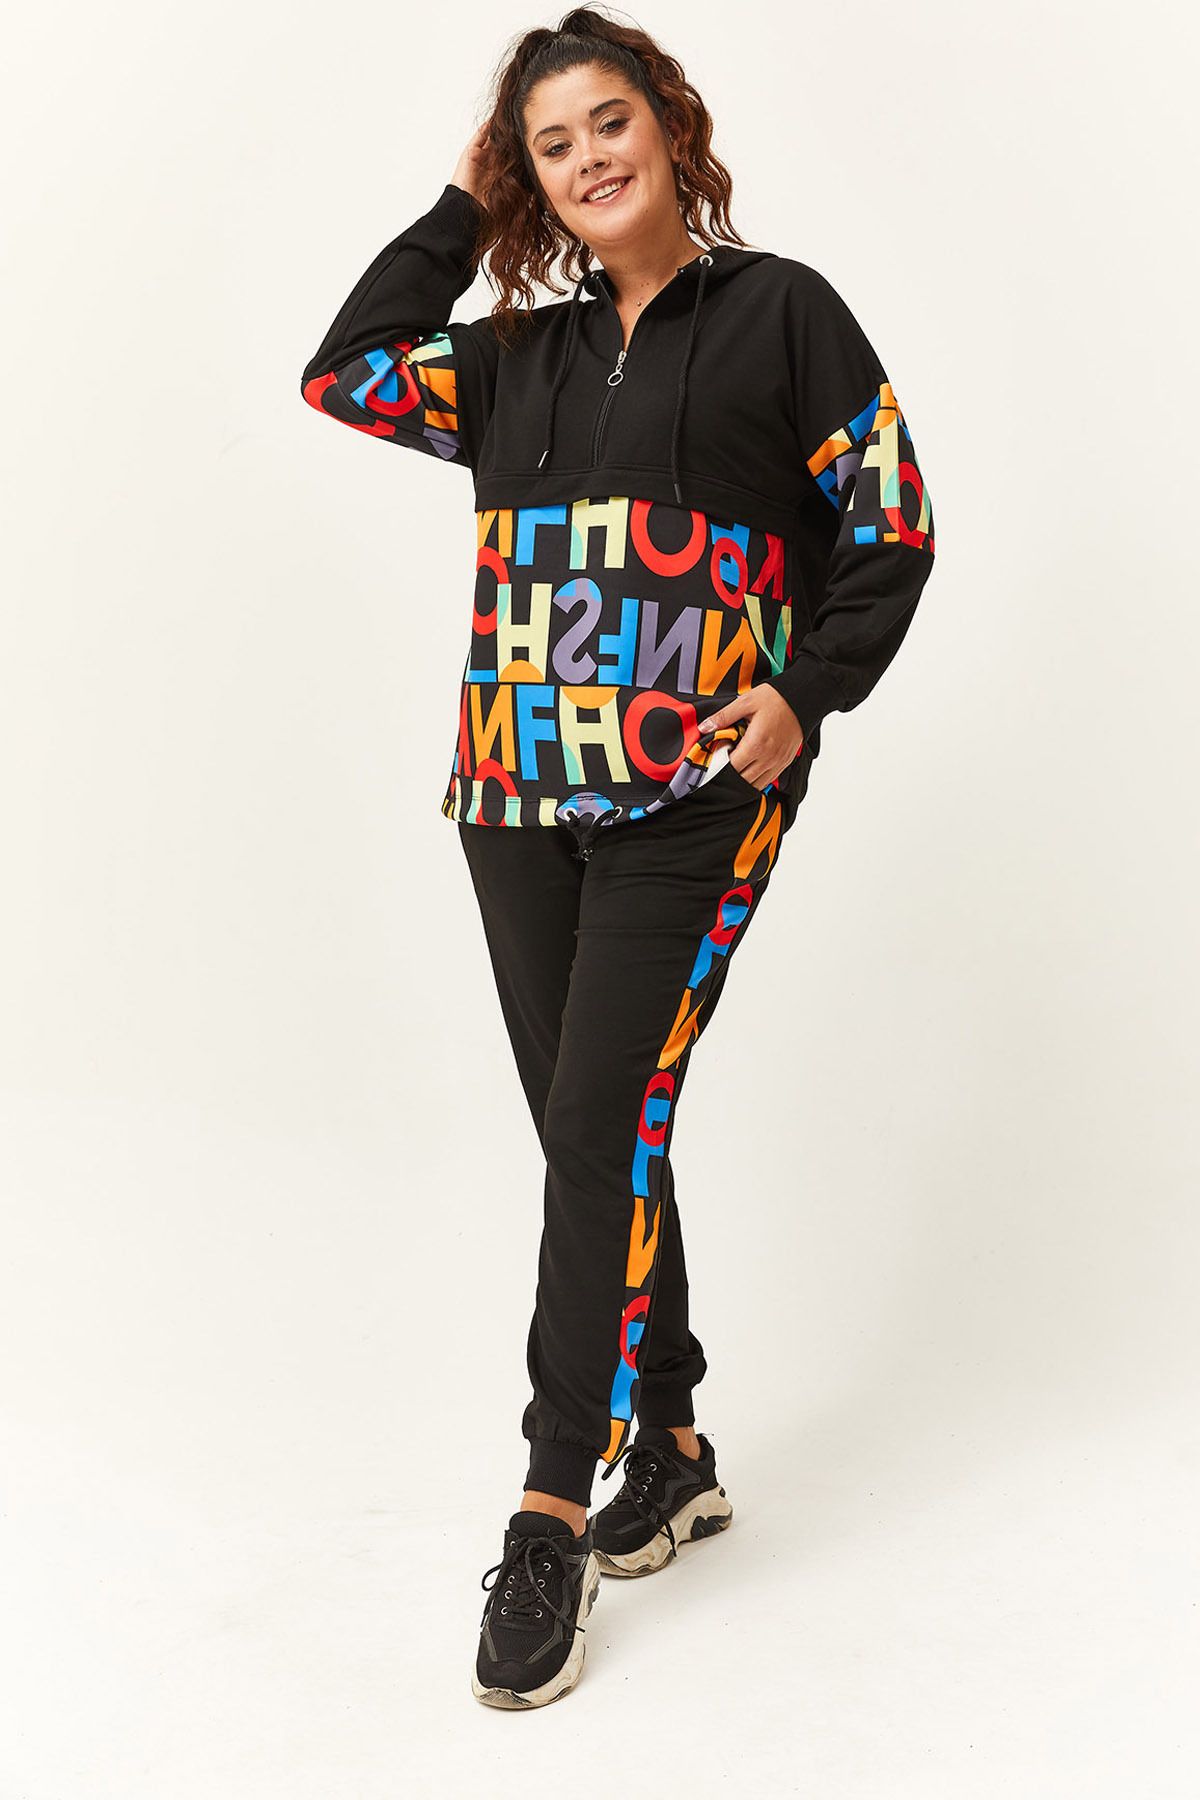 Ebsumu Kadın Büyük Beden Renkli Harf Desenli Siyah Eşofman Takımı 30901